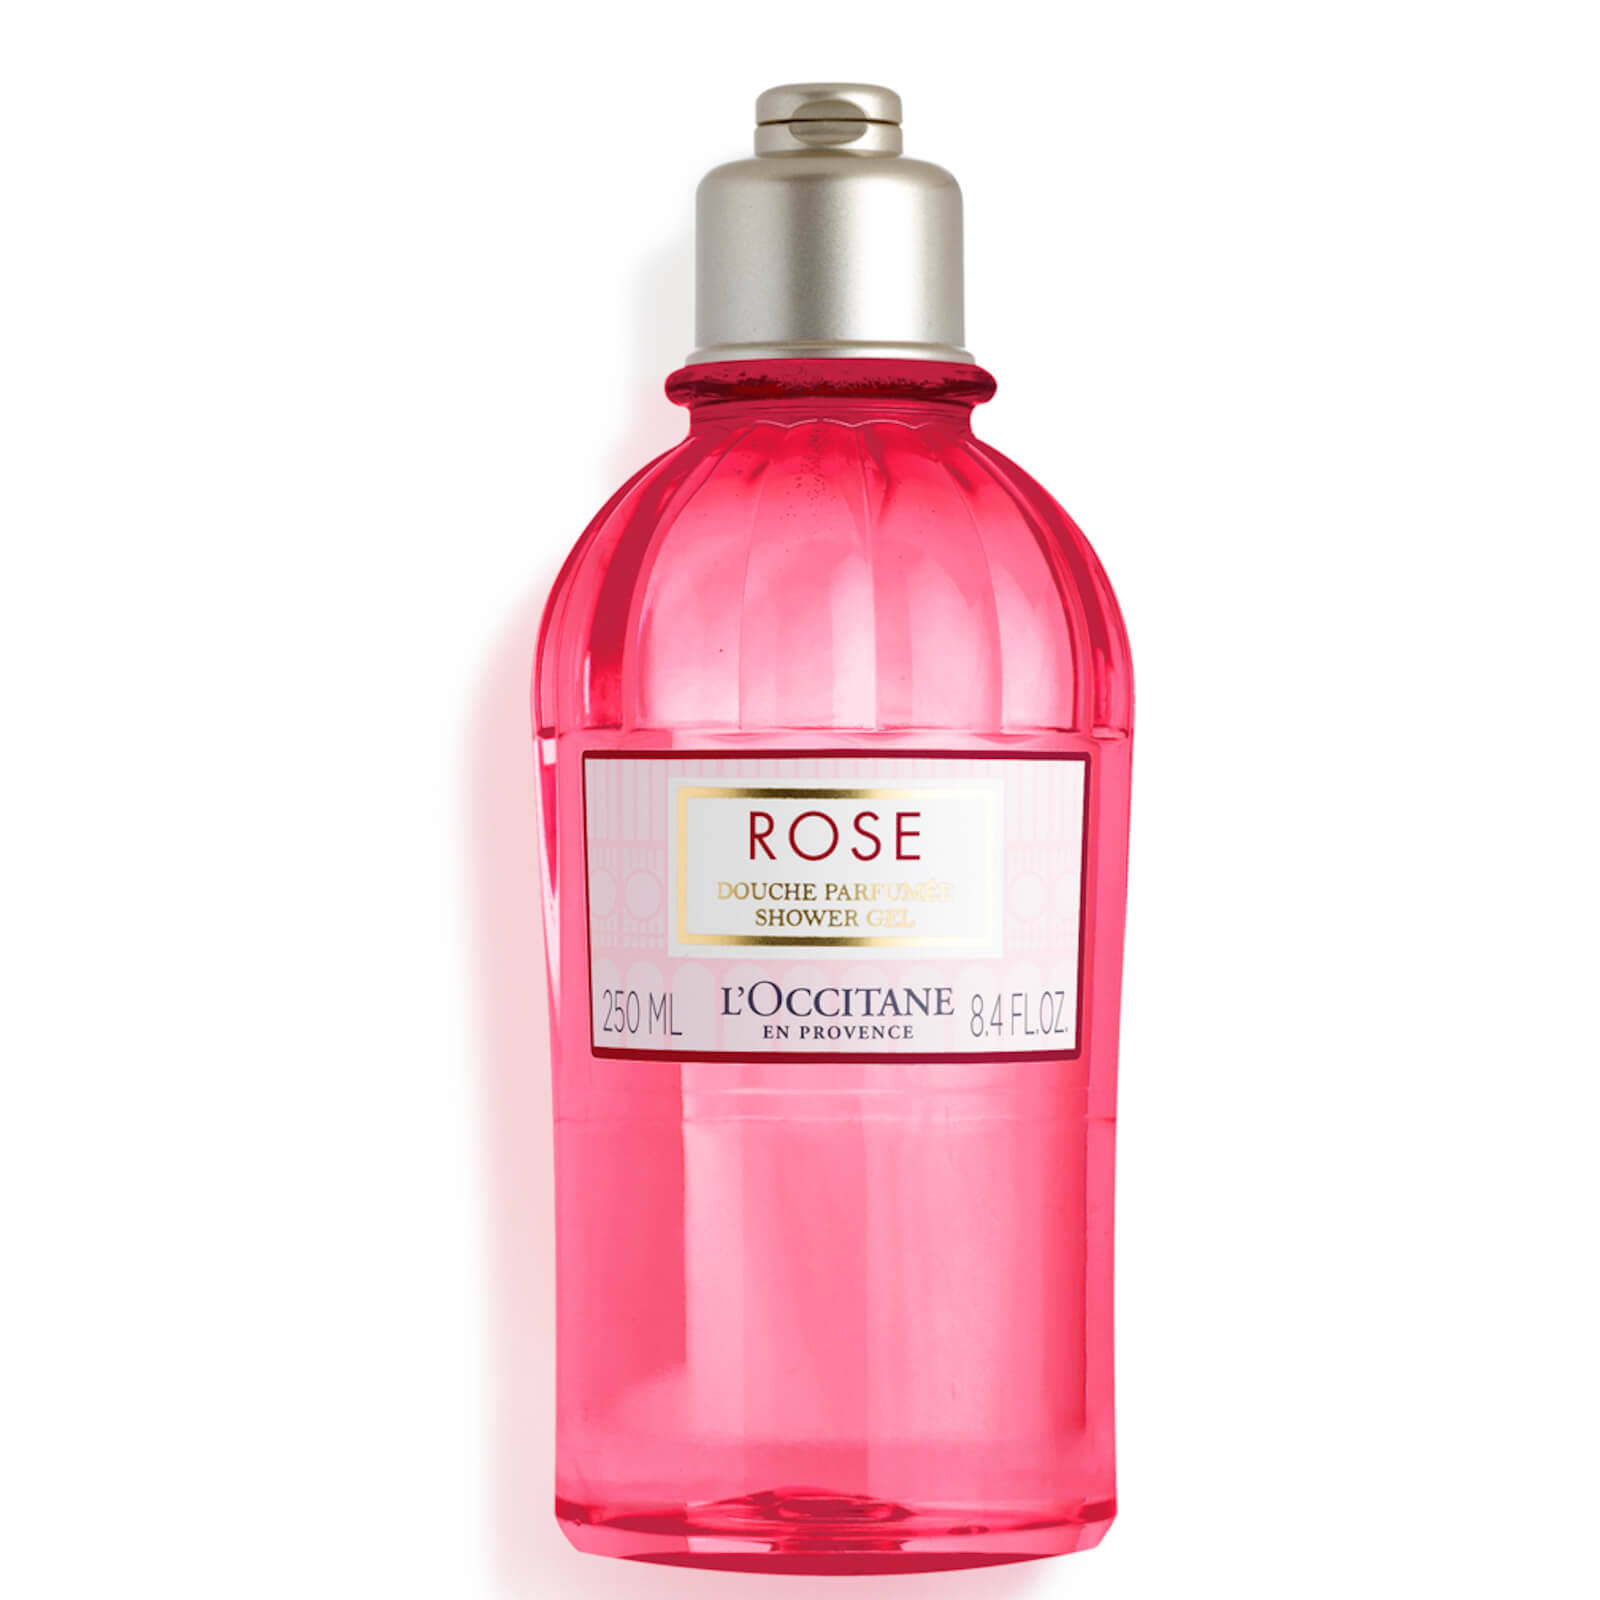 L'Occitane Rose Shower Gel 250 ml.